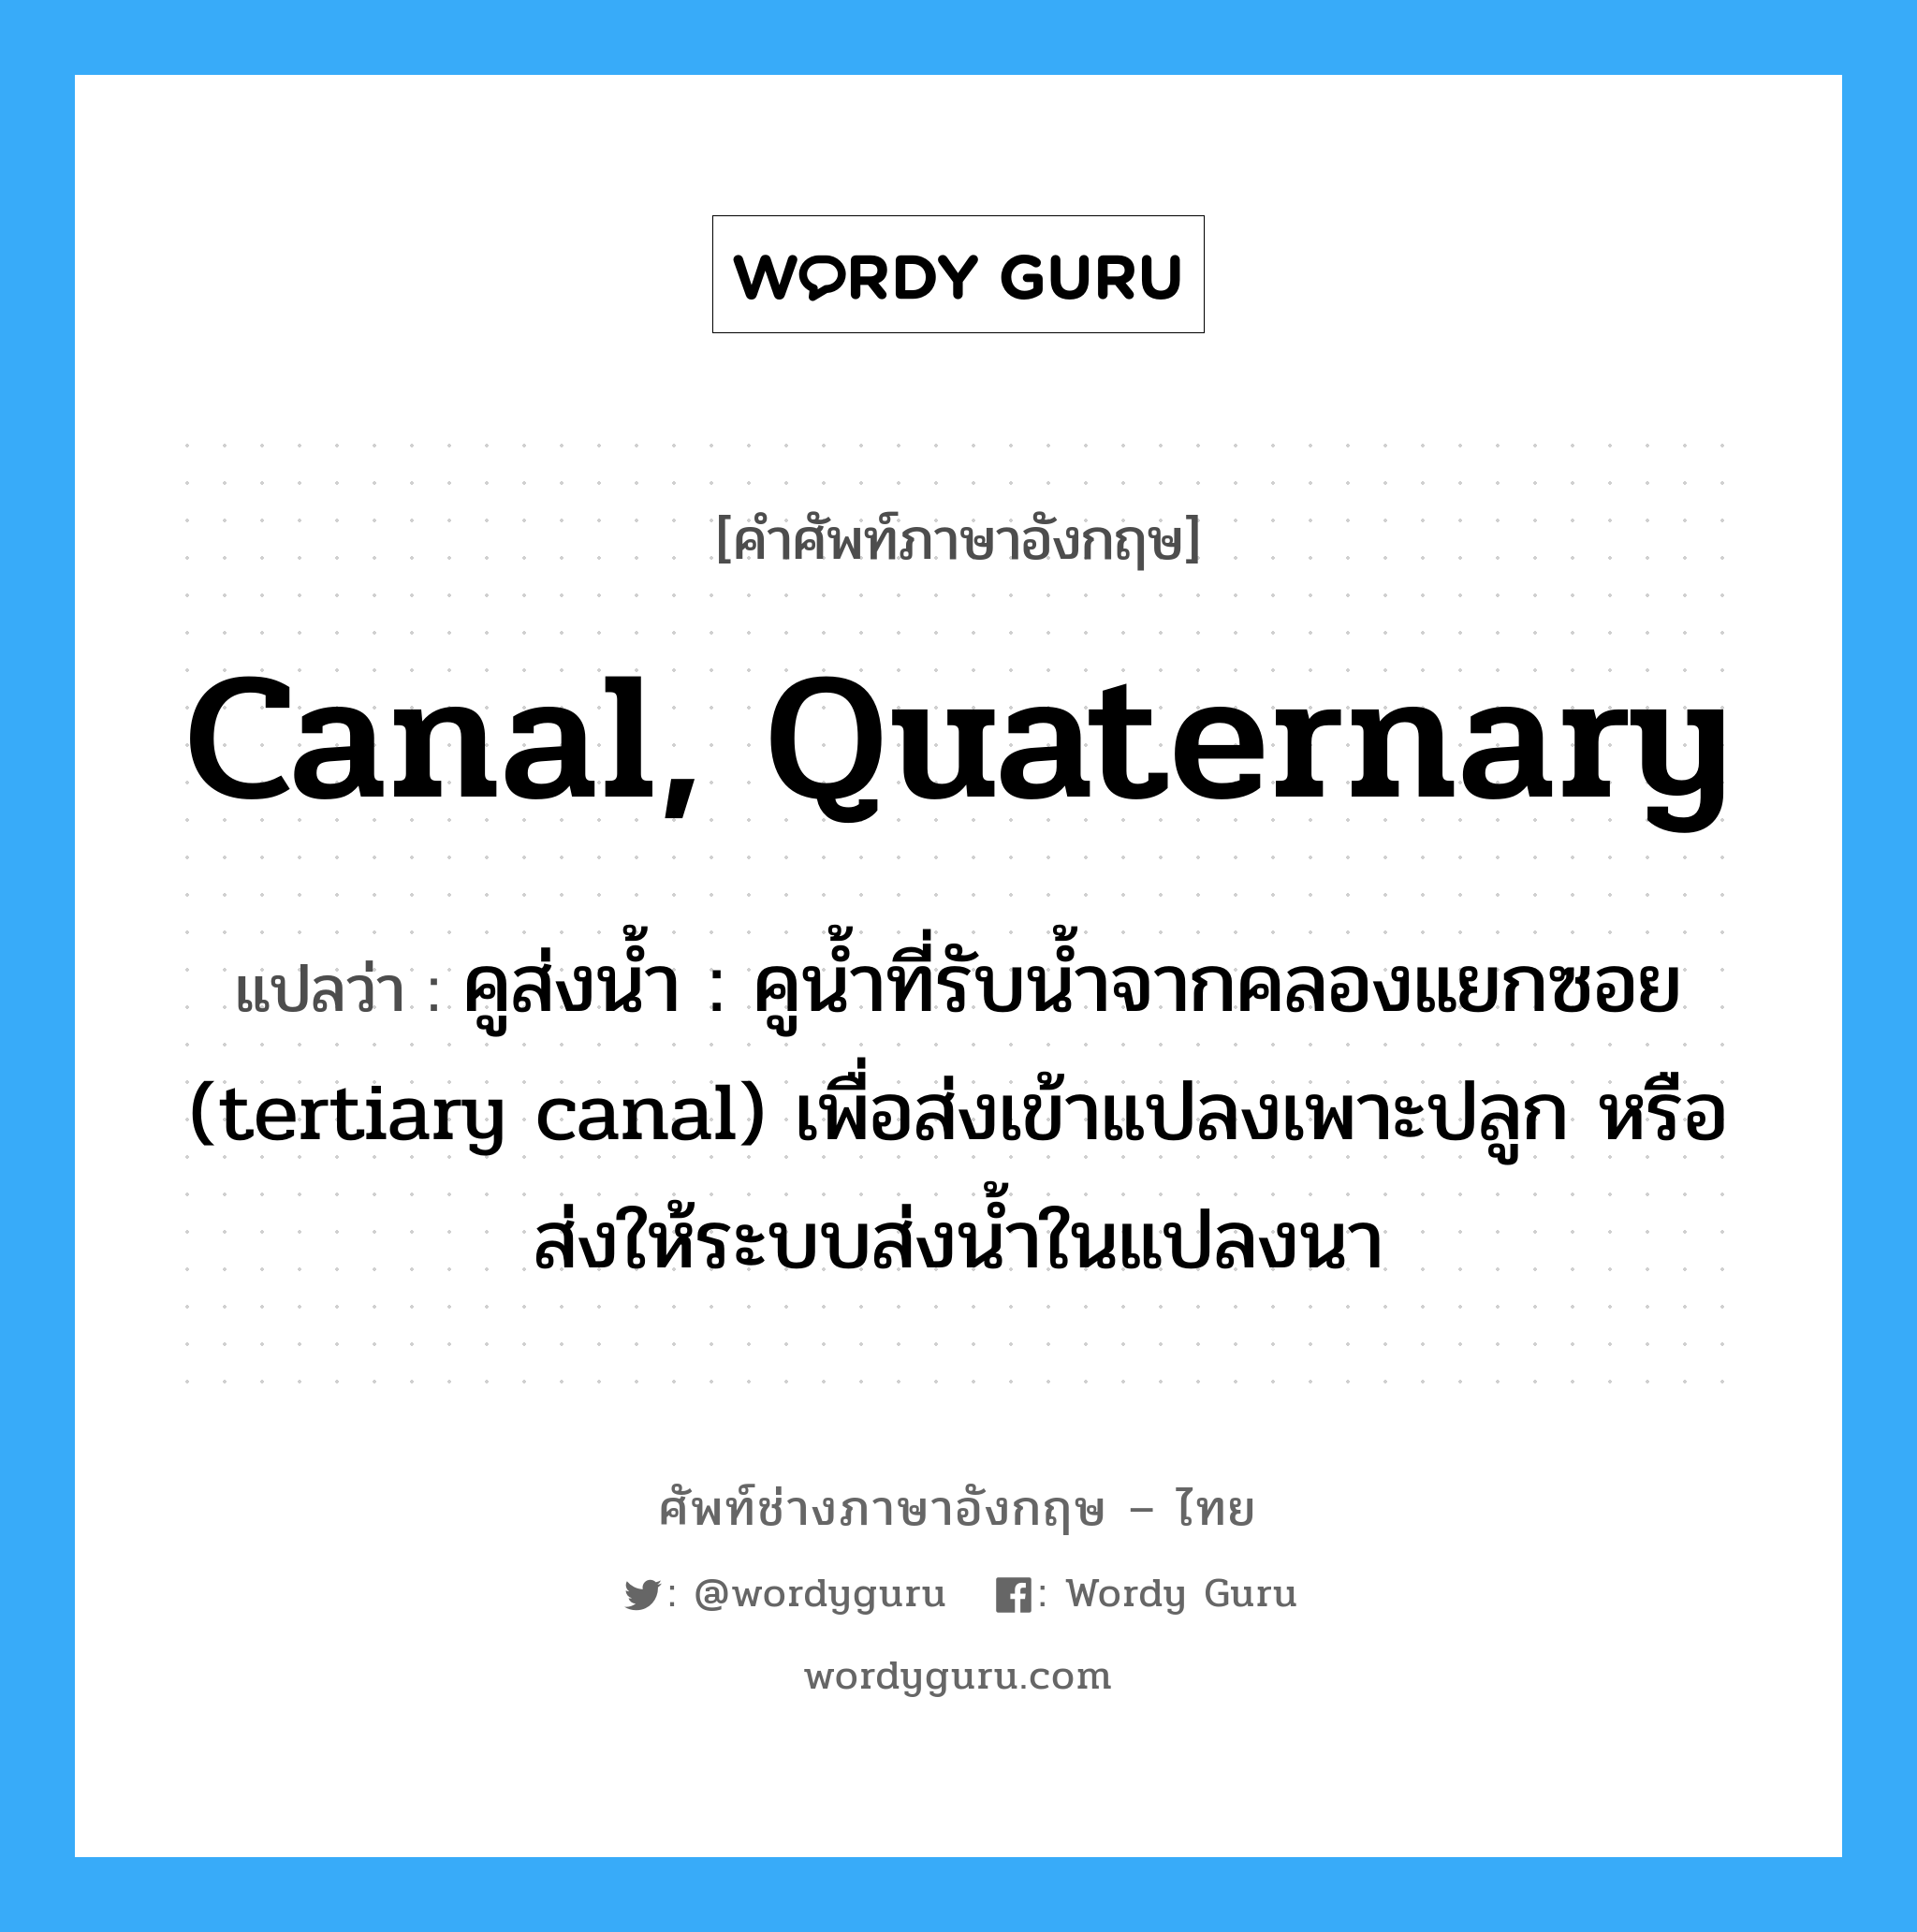 canal, quaternary แปลว่า?, คำศัพท์ช่างภาษาอังกฤษ - ไทย canal, quaternary คำศัพท์ภาษาอังกฤษ canal, quaternary แปลว่า คูส่งน้ำ : คูน้ำที่รับน้ำจากคลองแยกซอย (tertiary canal) เพื่อส่งเข้าแปลงเพาะปลูก หรือส่งให้ระบบส่งน้ำในแปลงนา